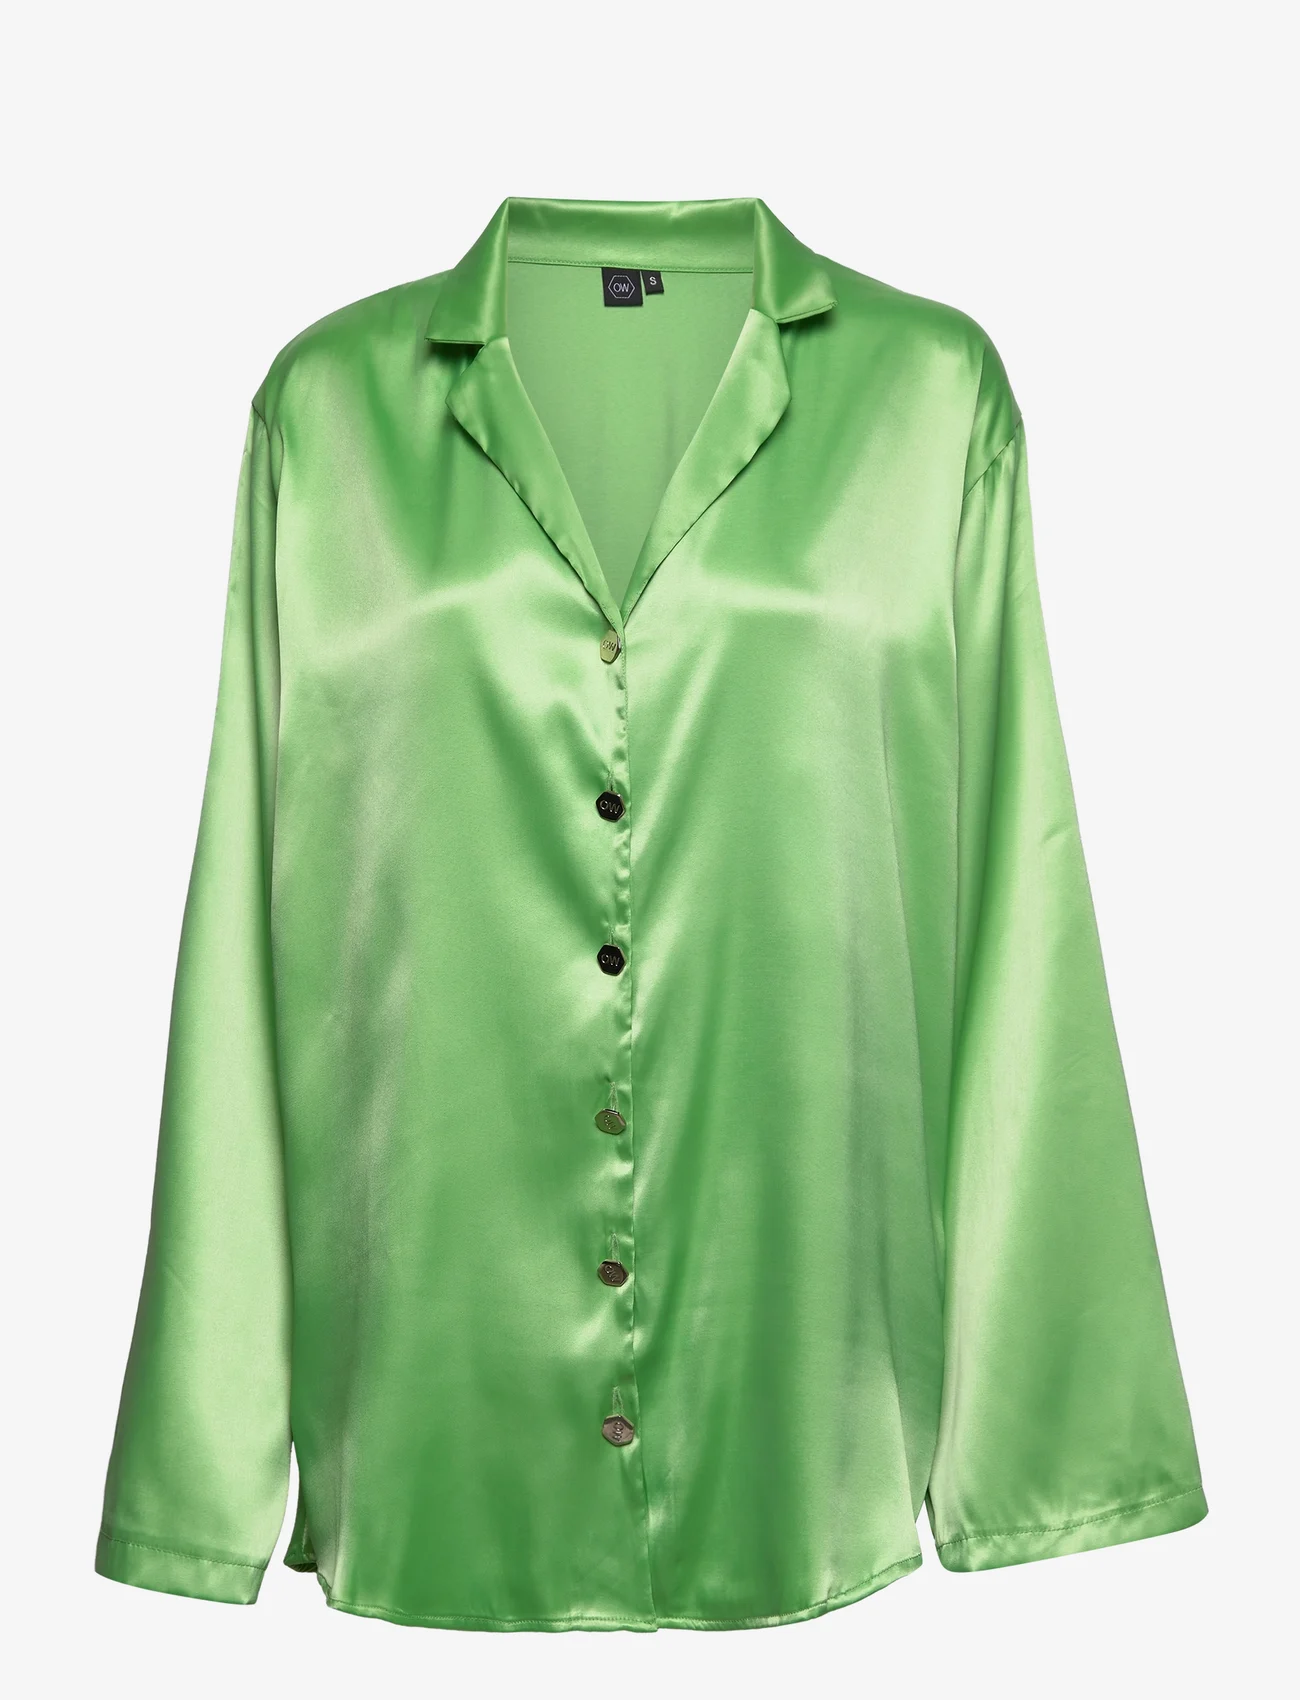 OW Collection - FRANKIE Shirt - Överdelar - mellow green - 0